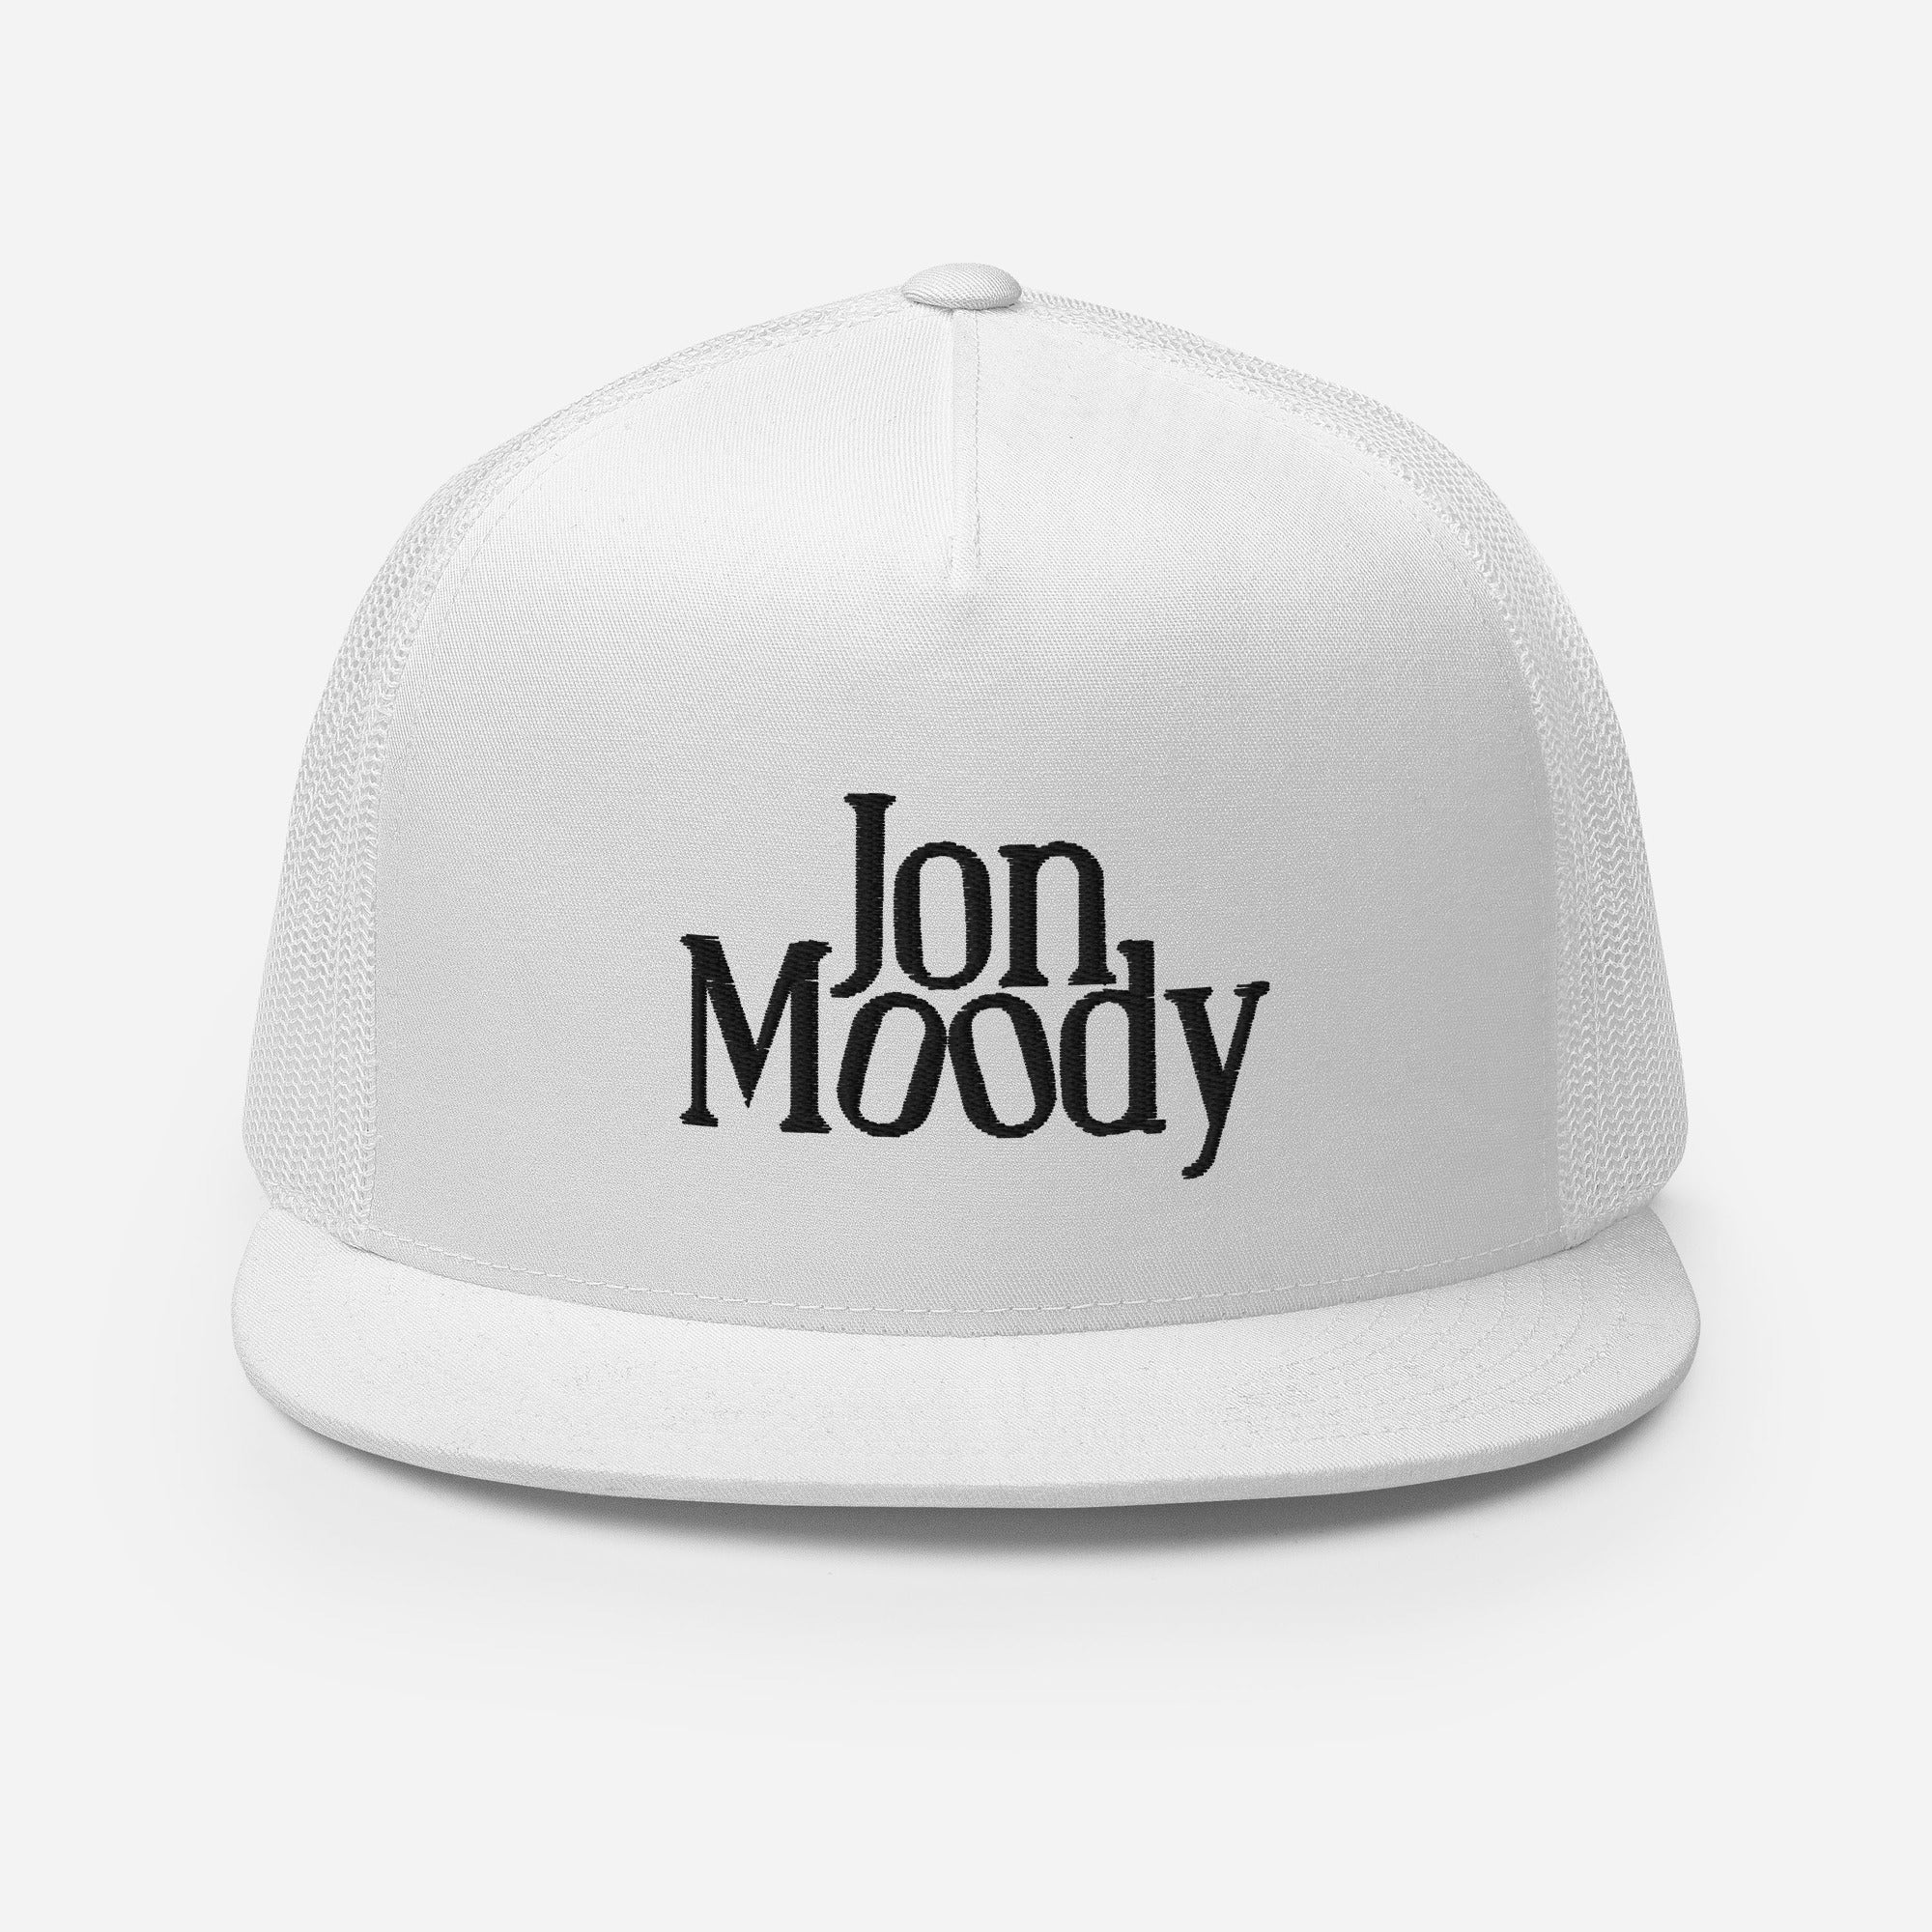 Jon Moody - Trucker Cap